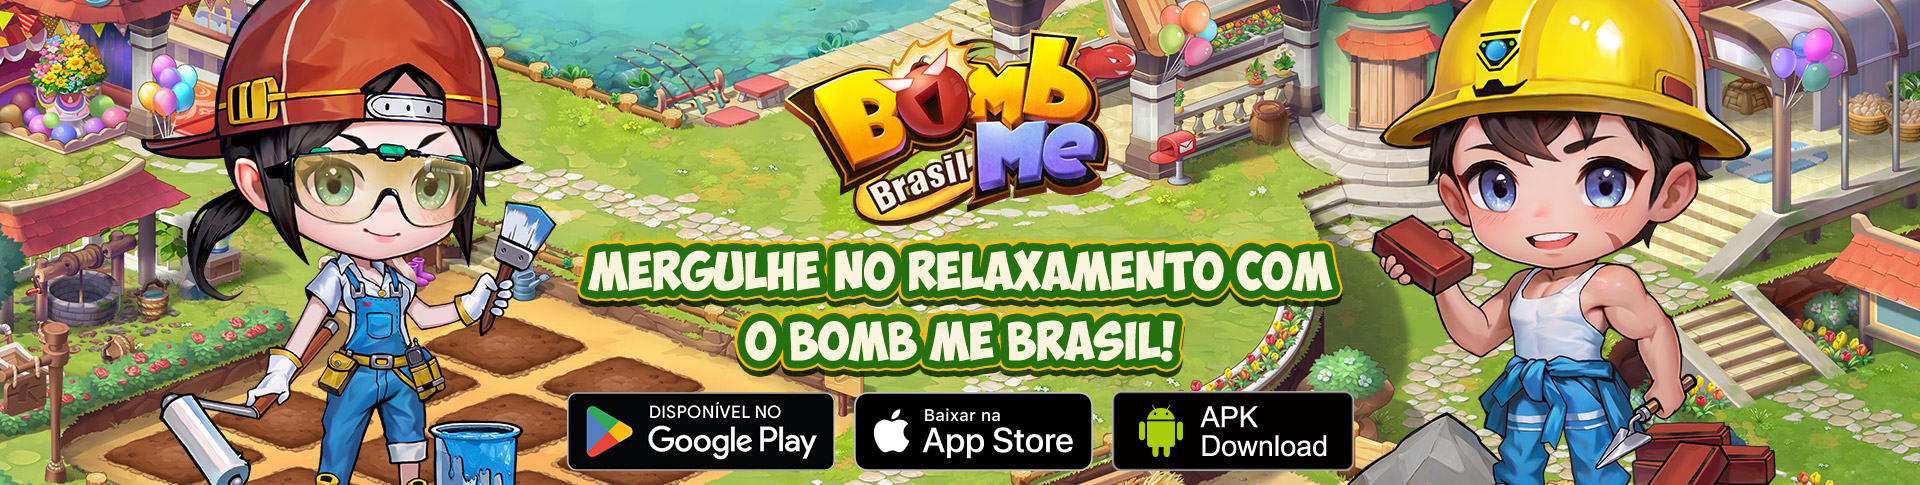 Bomb Me Brasil